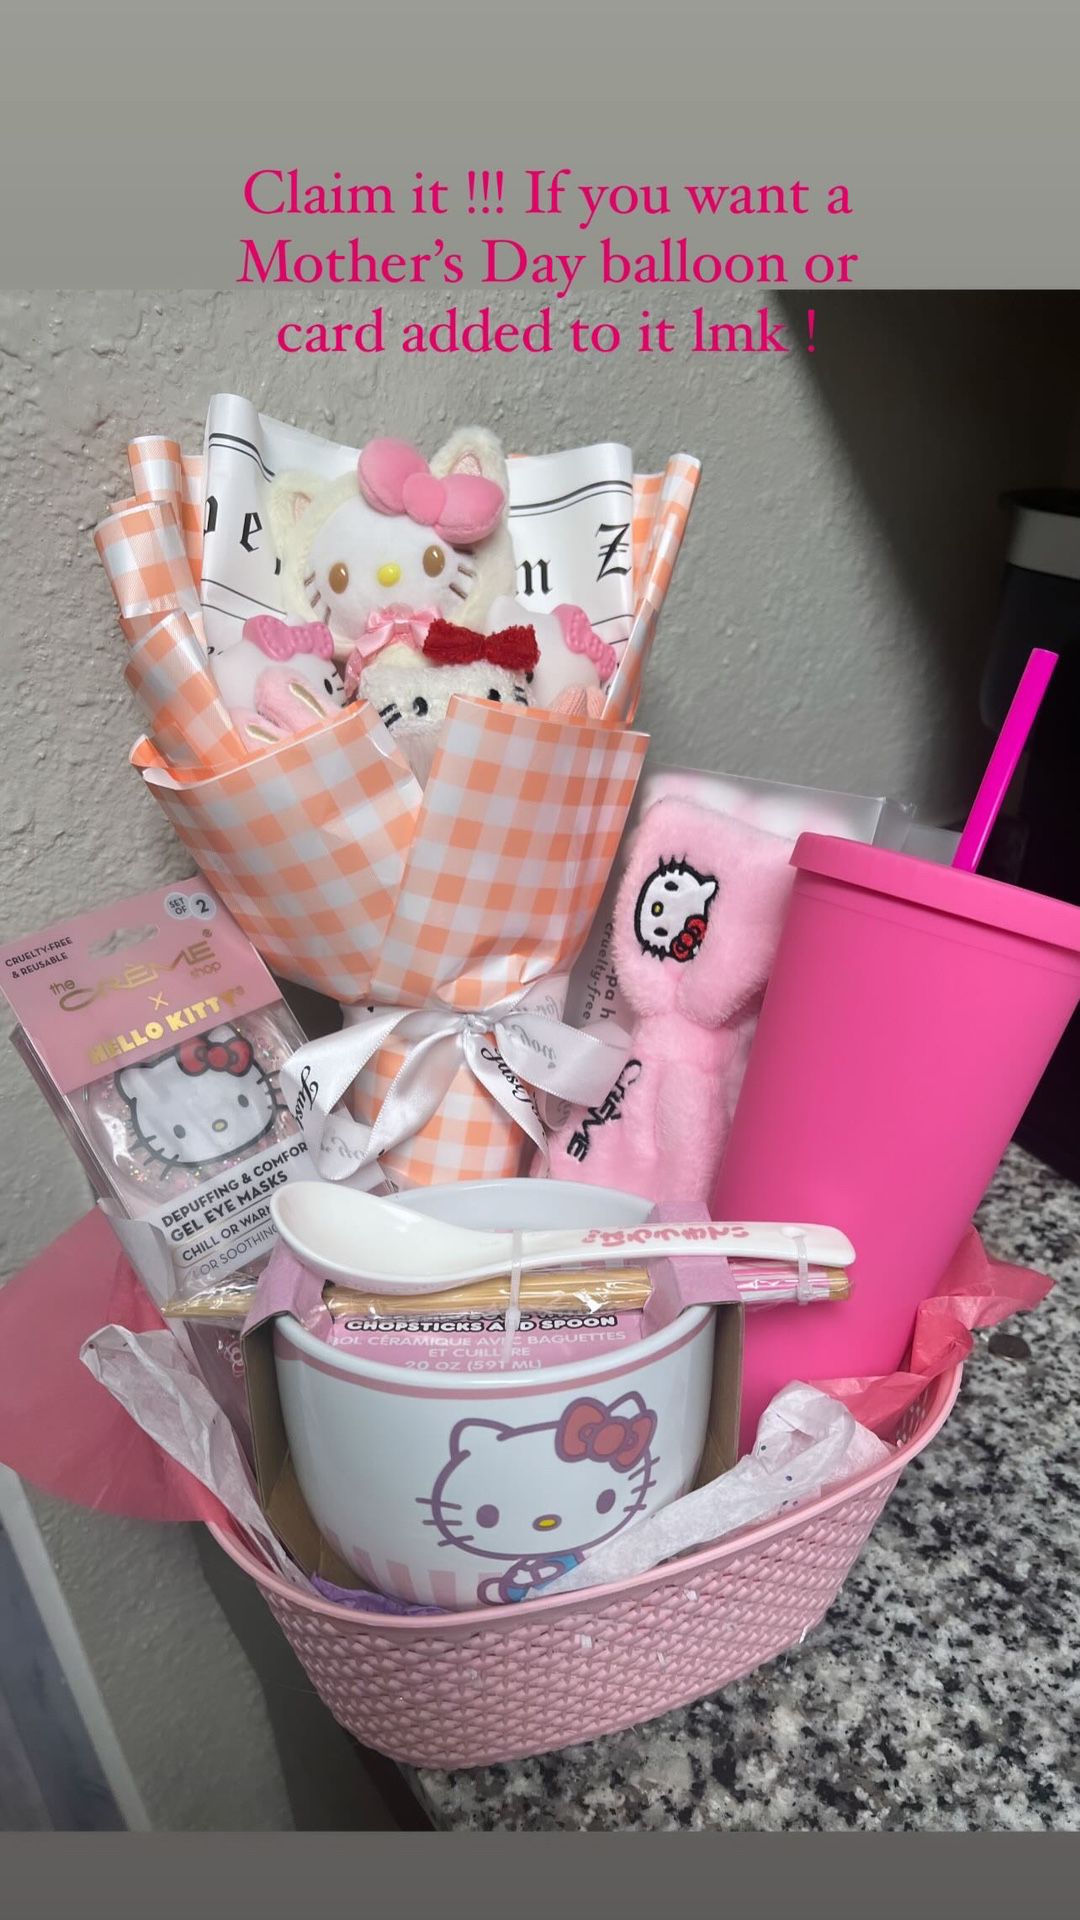 Hello Kitty Kitty gift